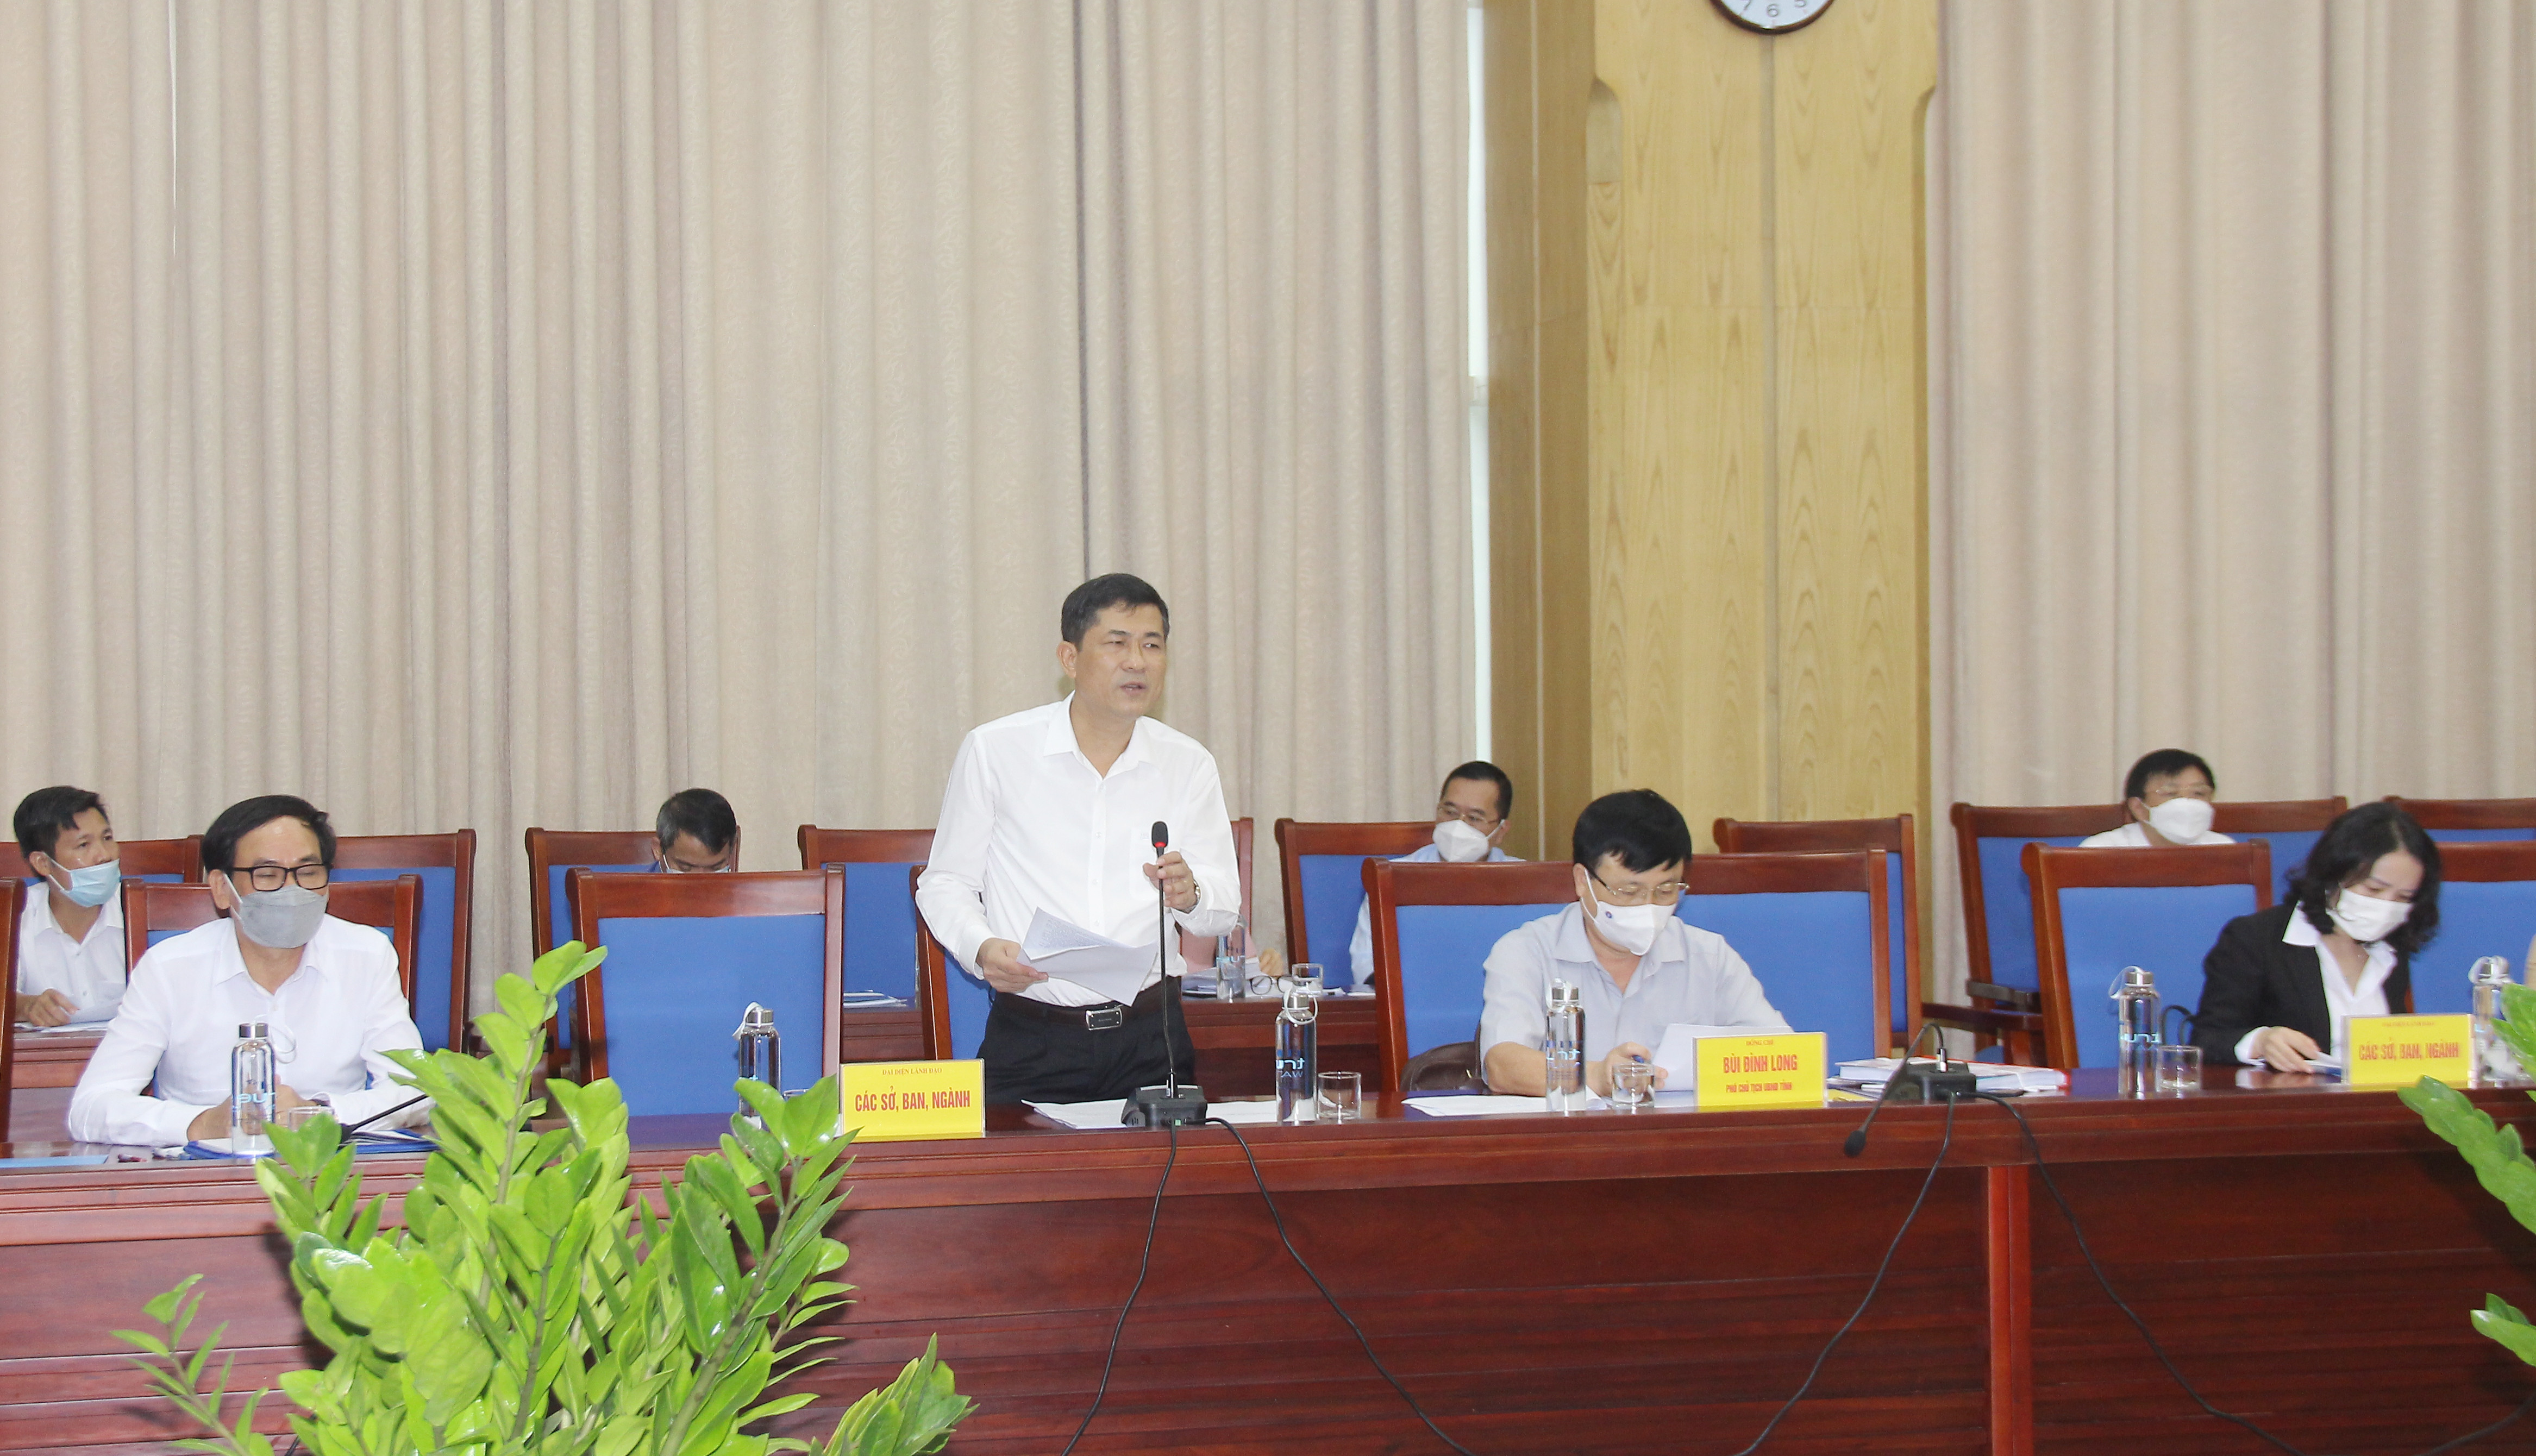 Giám đốc Sở Giáo dục - Đào tạo, Thái Văn Thành báo cáo tình hình giảng dạy trong điều kiện dịch Covid - 19 ở Nghệ An. Ảnh: Mai Hoa